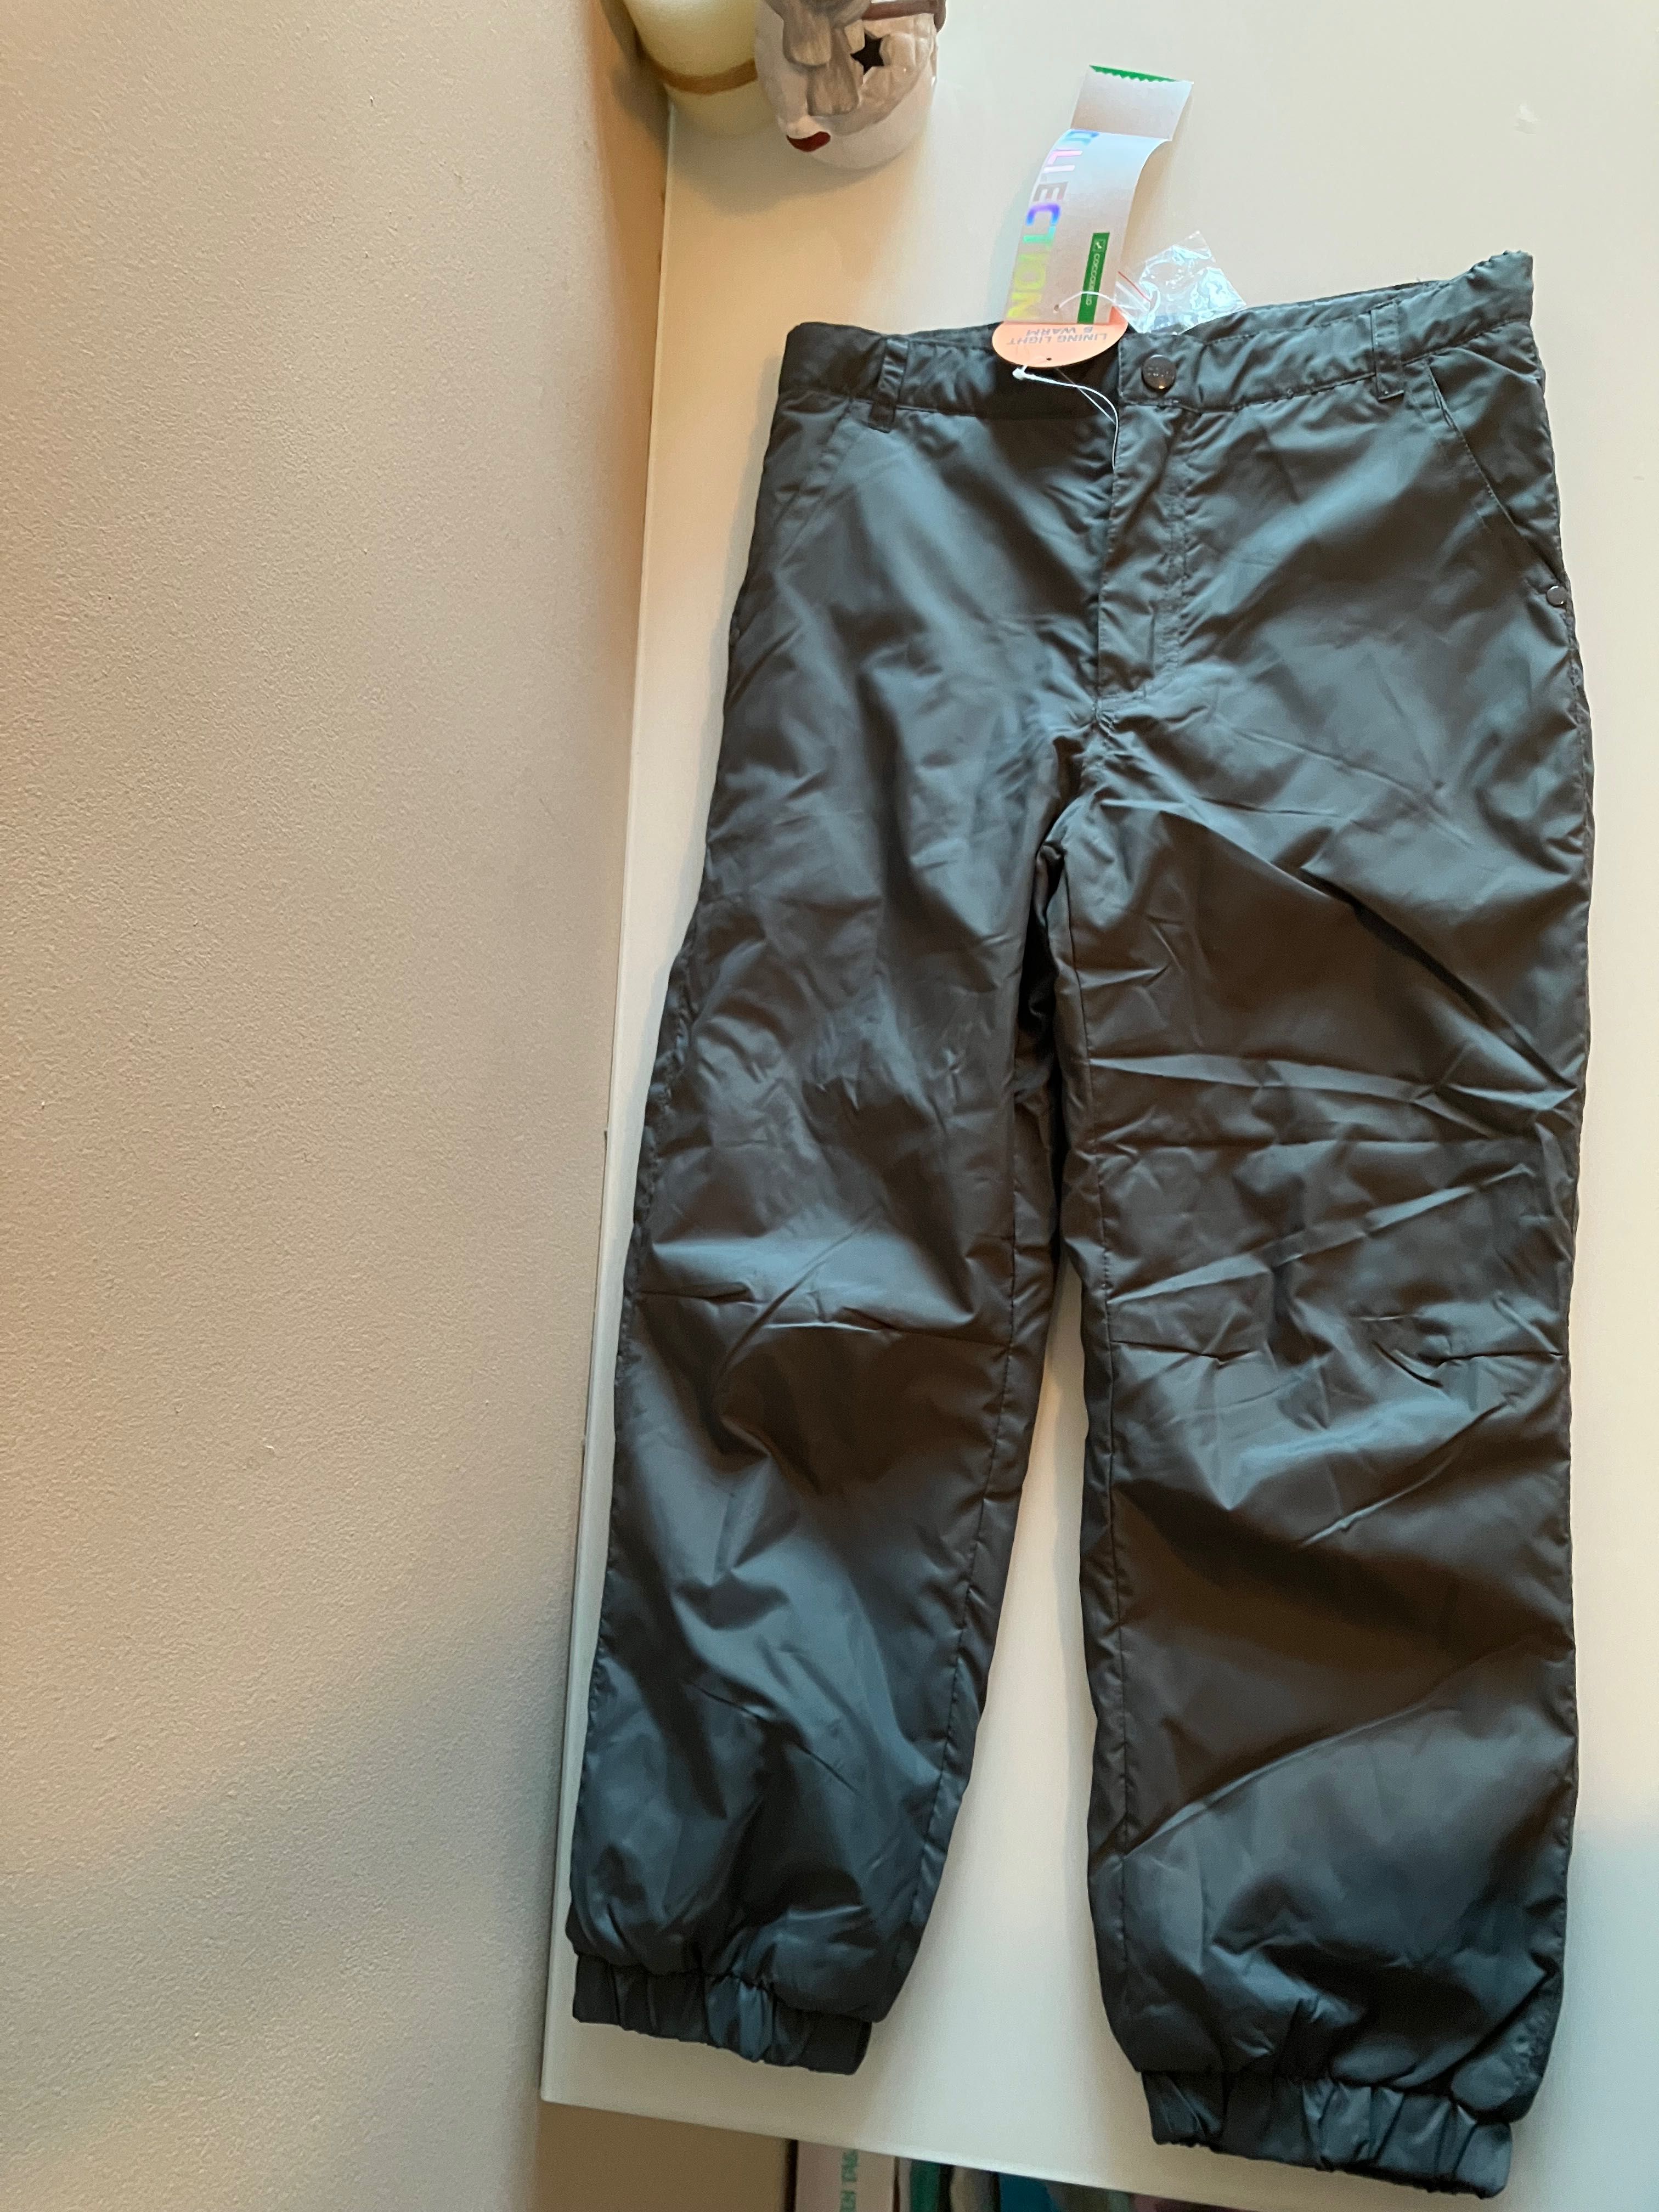 Панталон за ски Coccodrillo, с вата, размер 122, чисто нов с етикет